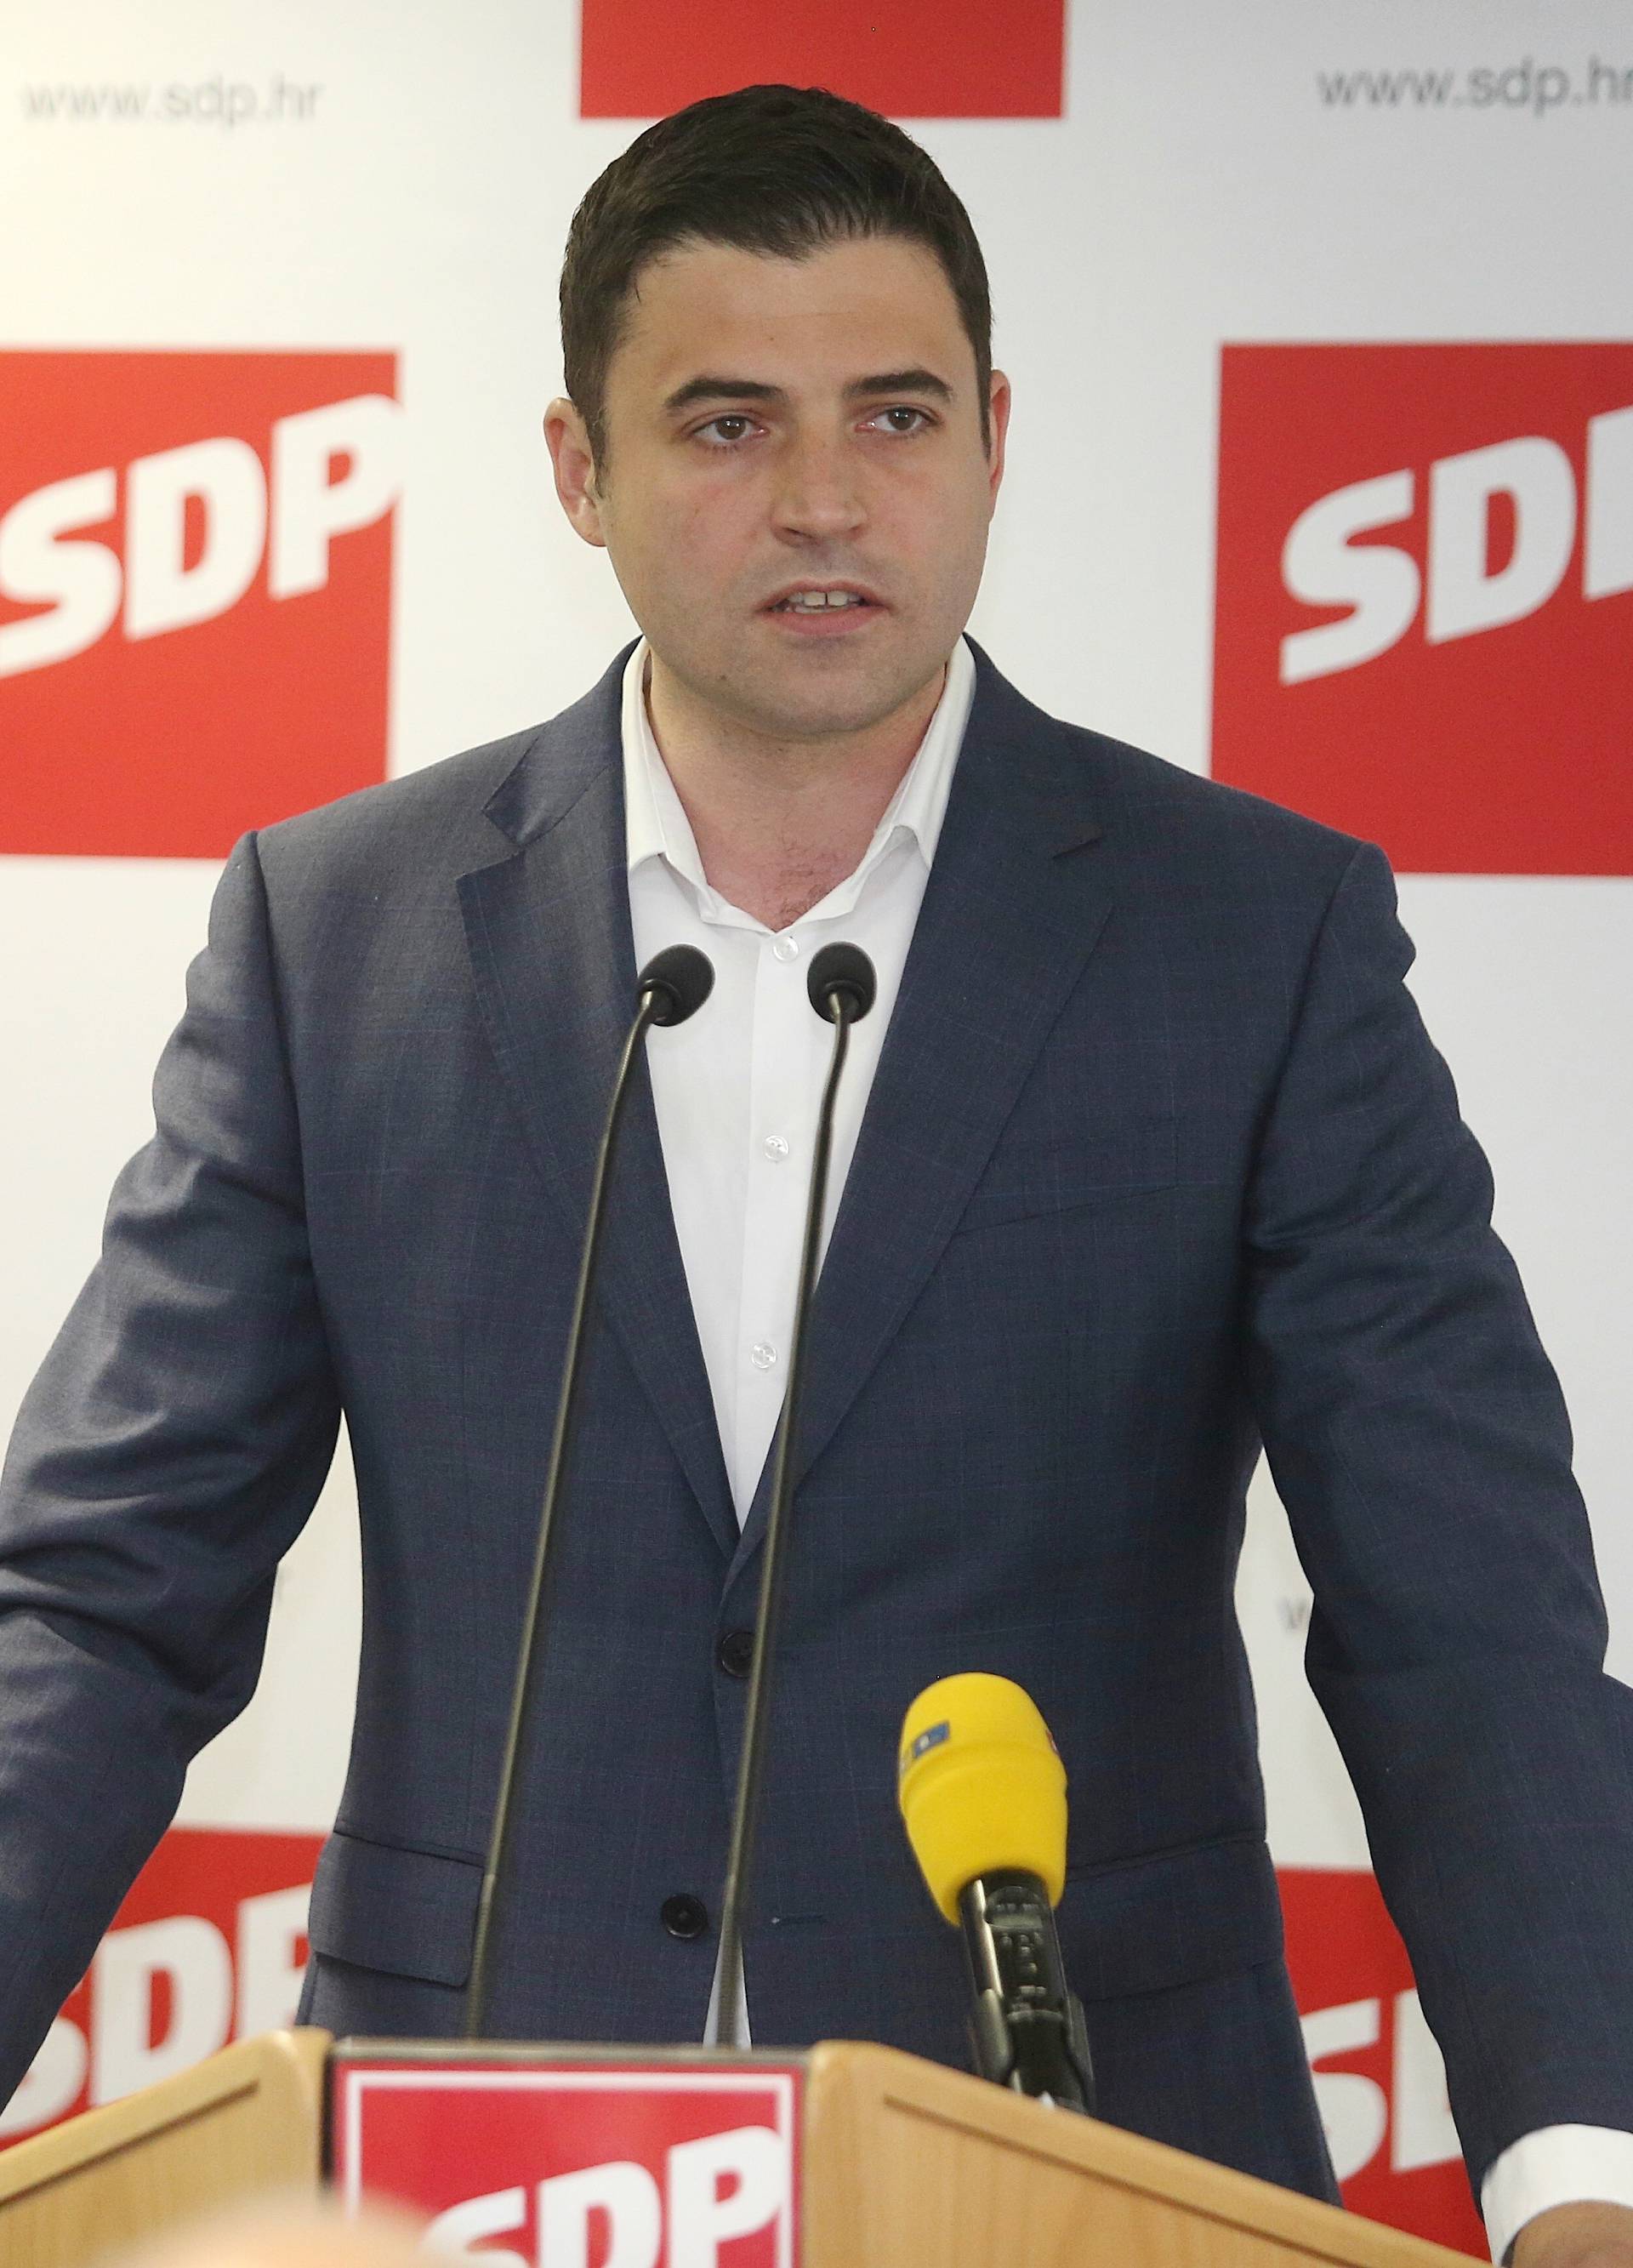 'U kaljuži političke trgovine je SDP dobra i pristojna stranka'